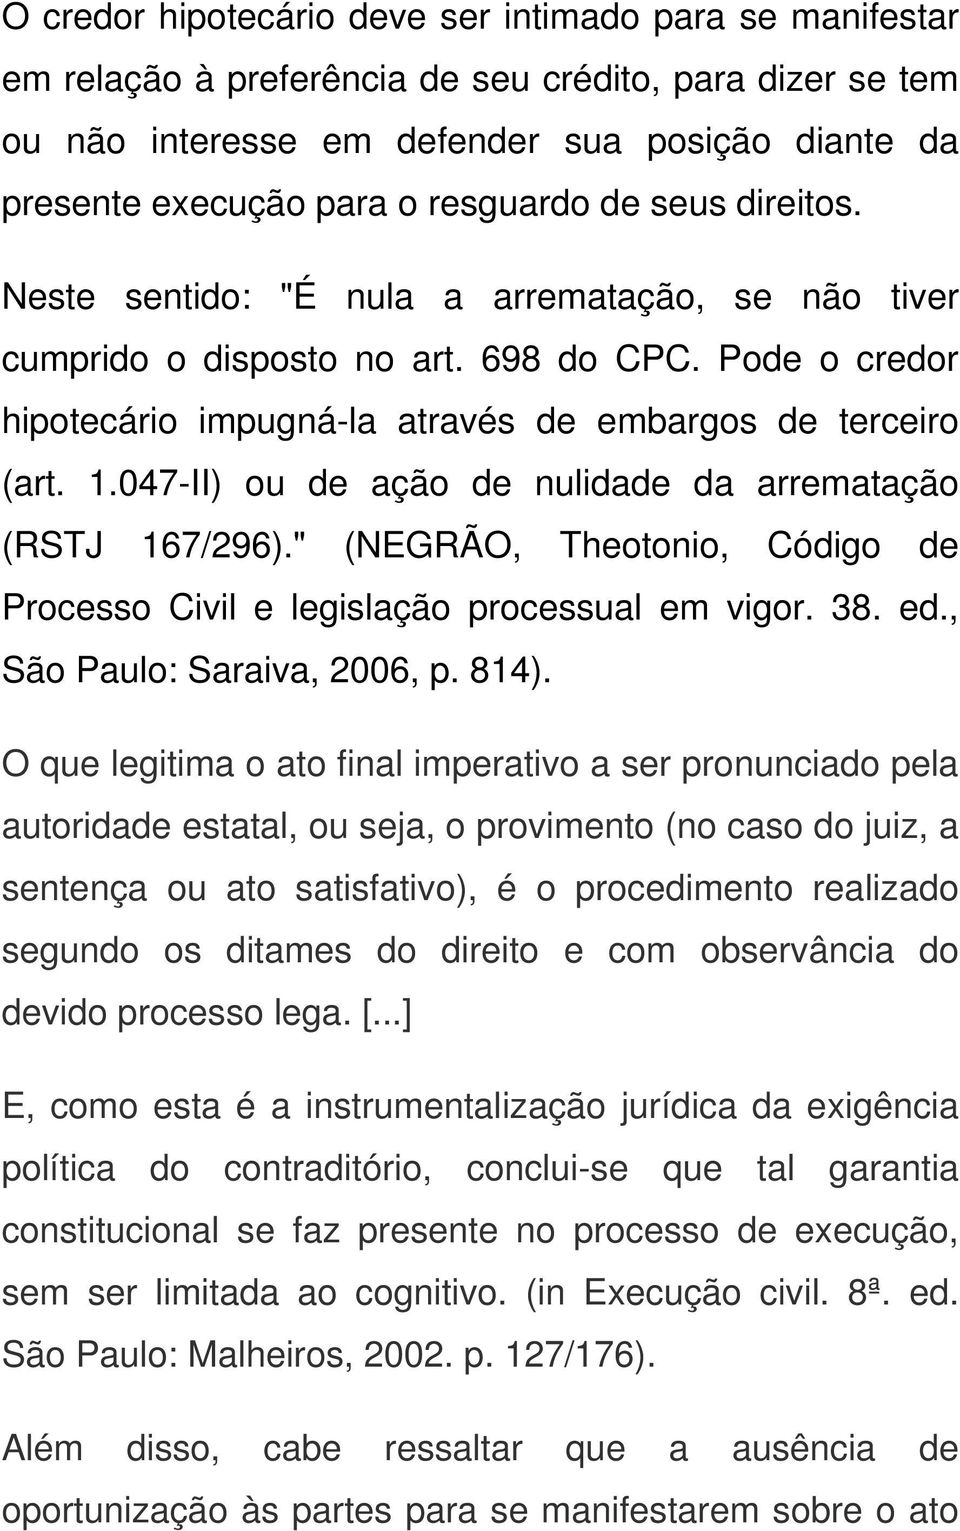 047-II) ou de ação de nulidade da arrematação (RSTJ 167/296)." (NEGRÃO, Theotonio, Código de Processo Civil e legislação processual em vigor. 38. ed., São Paulo: Saraiva, 2006, p. 814).